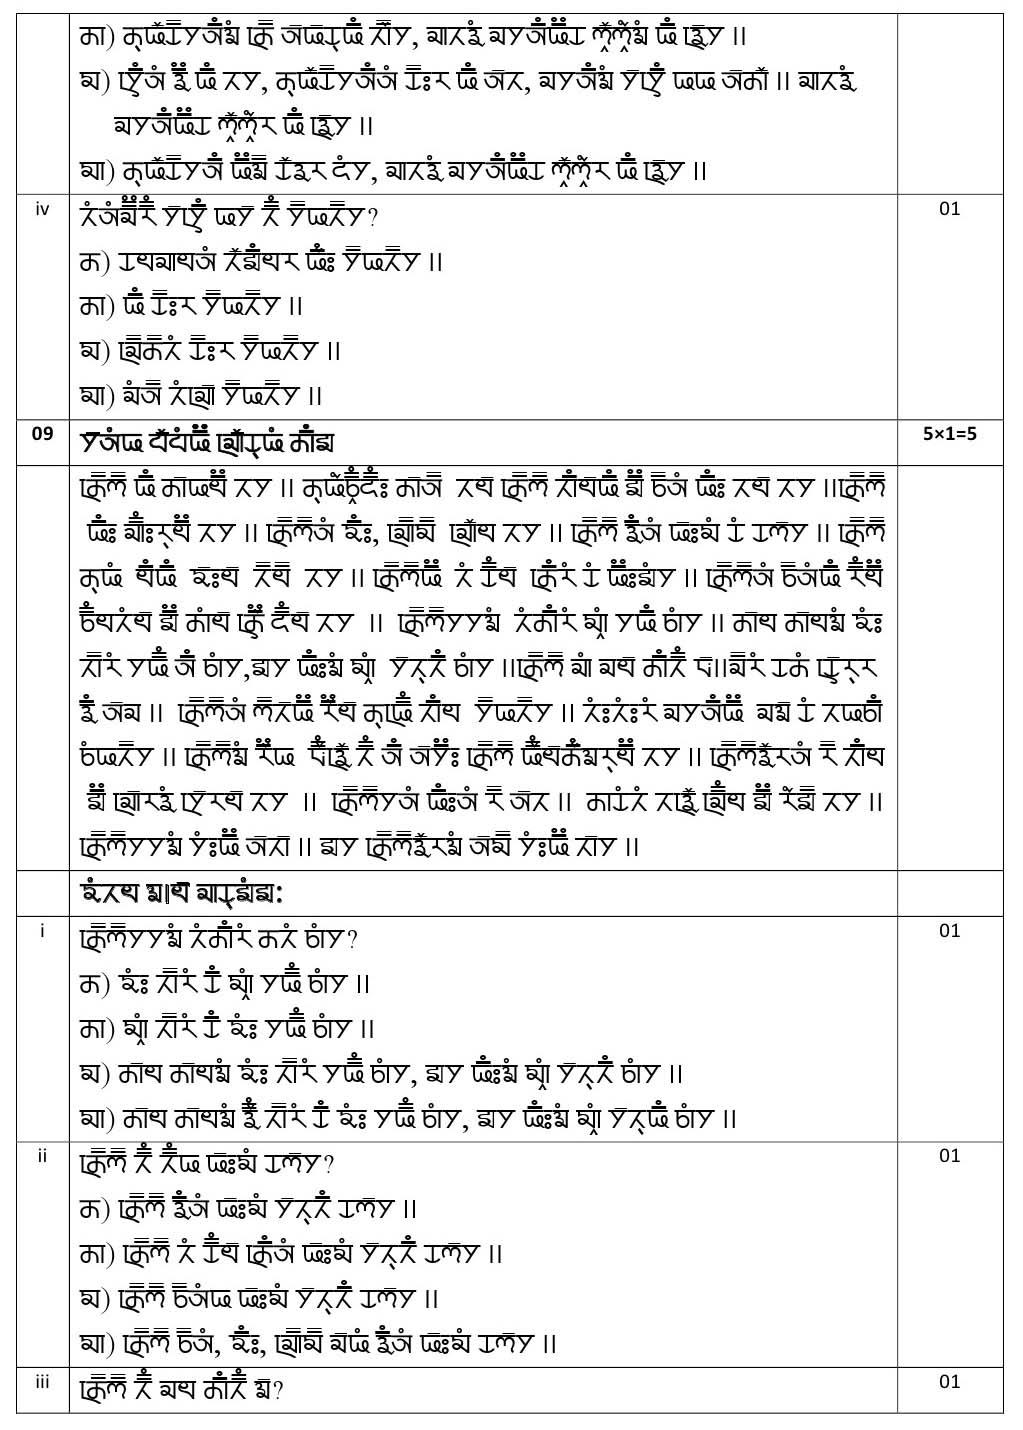 Gurung CBSE Class X Sample Question Paper 2020 21 - Image 12